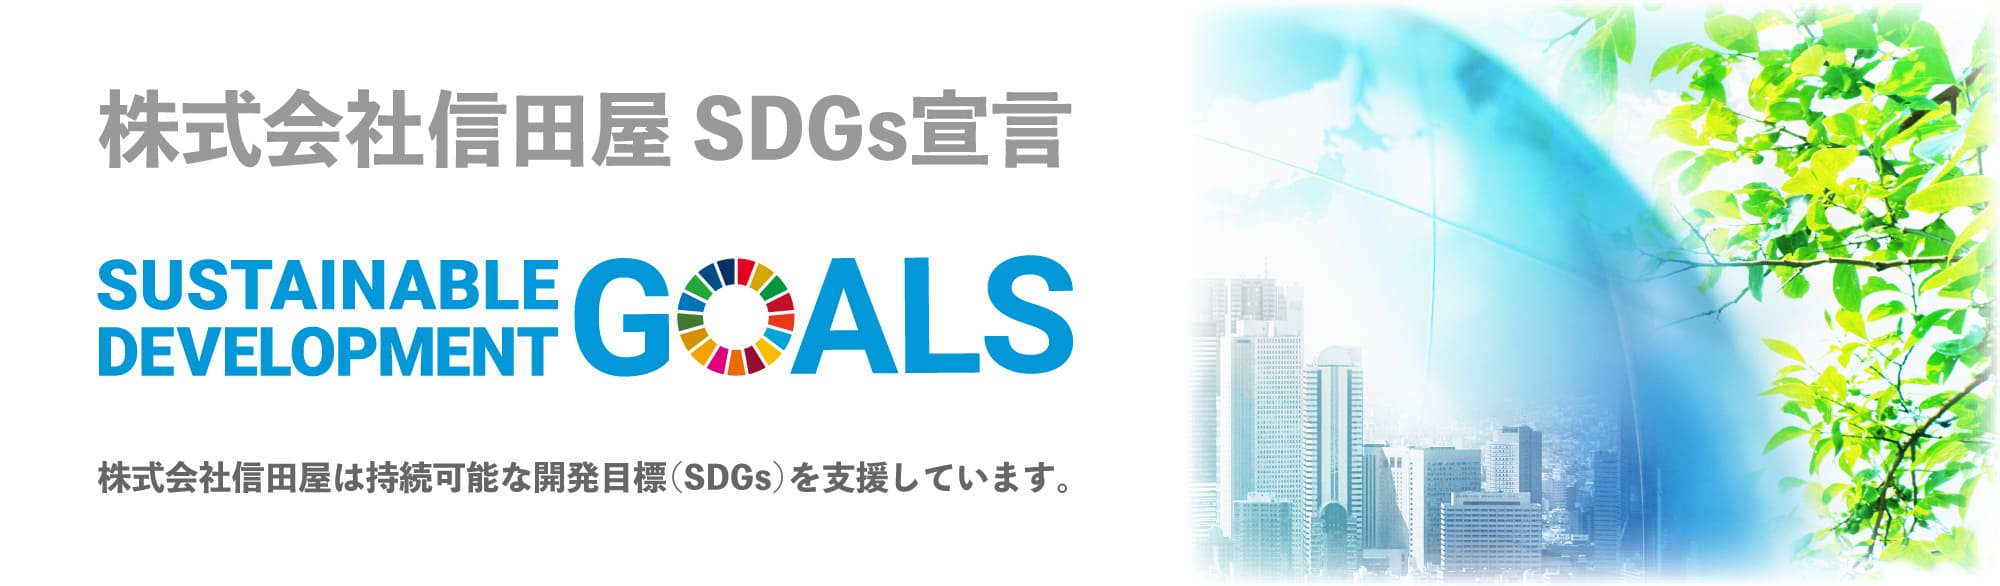 株式会社信田屋 SDGs宣言